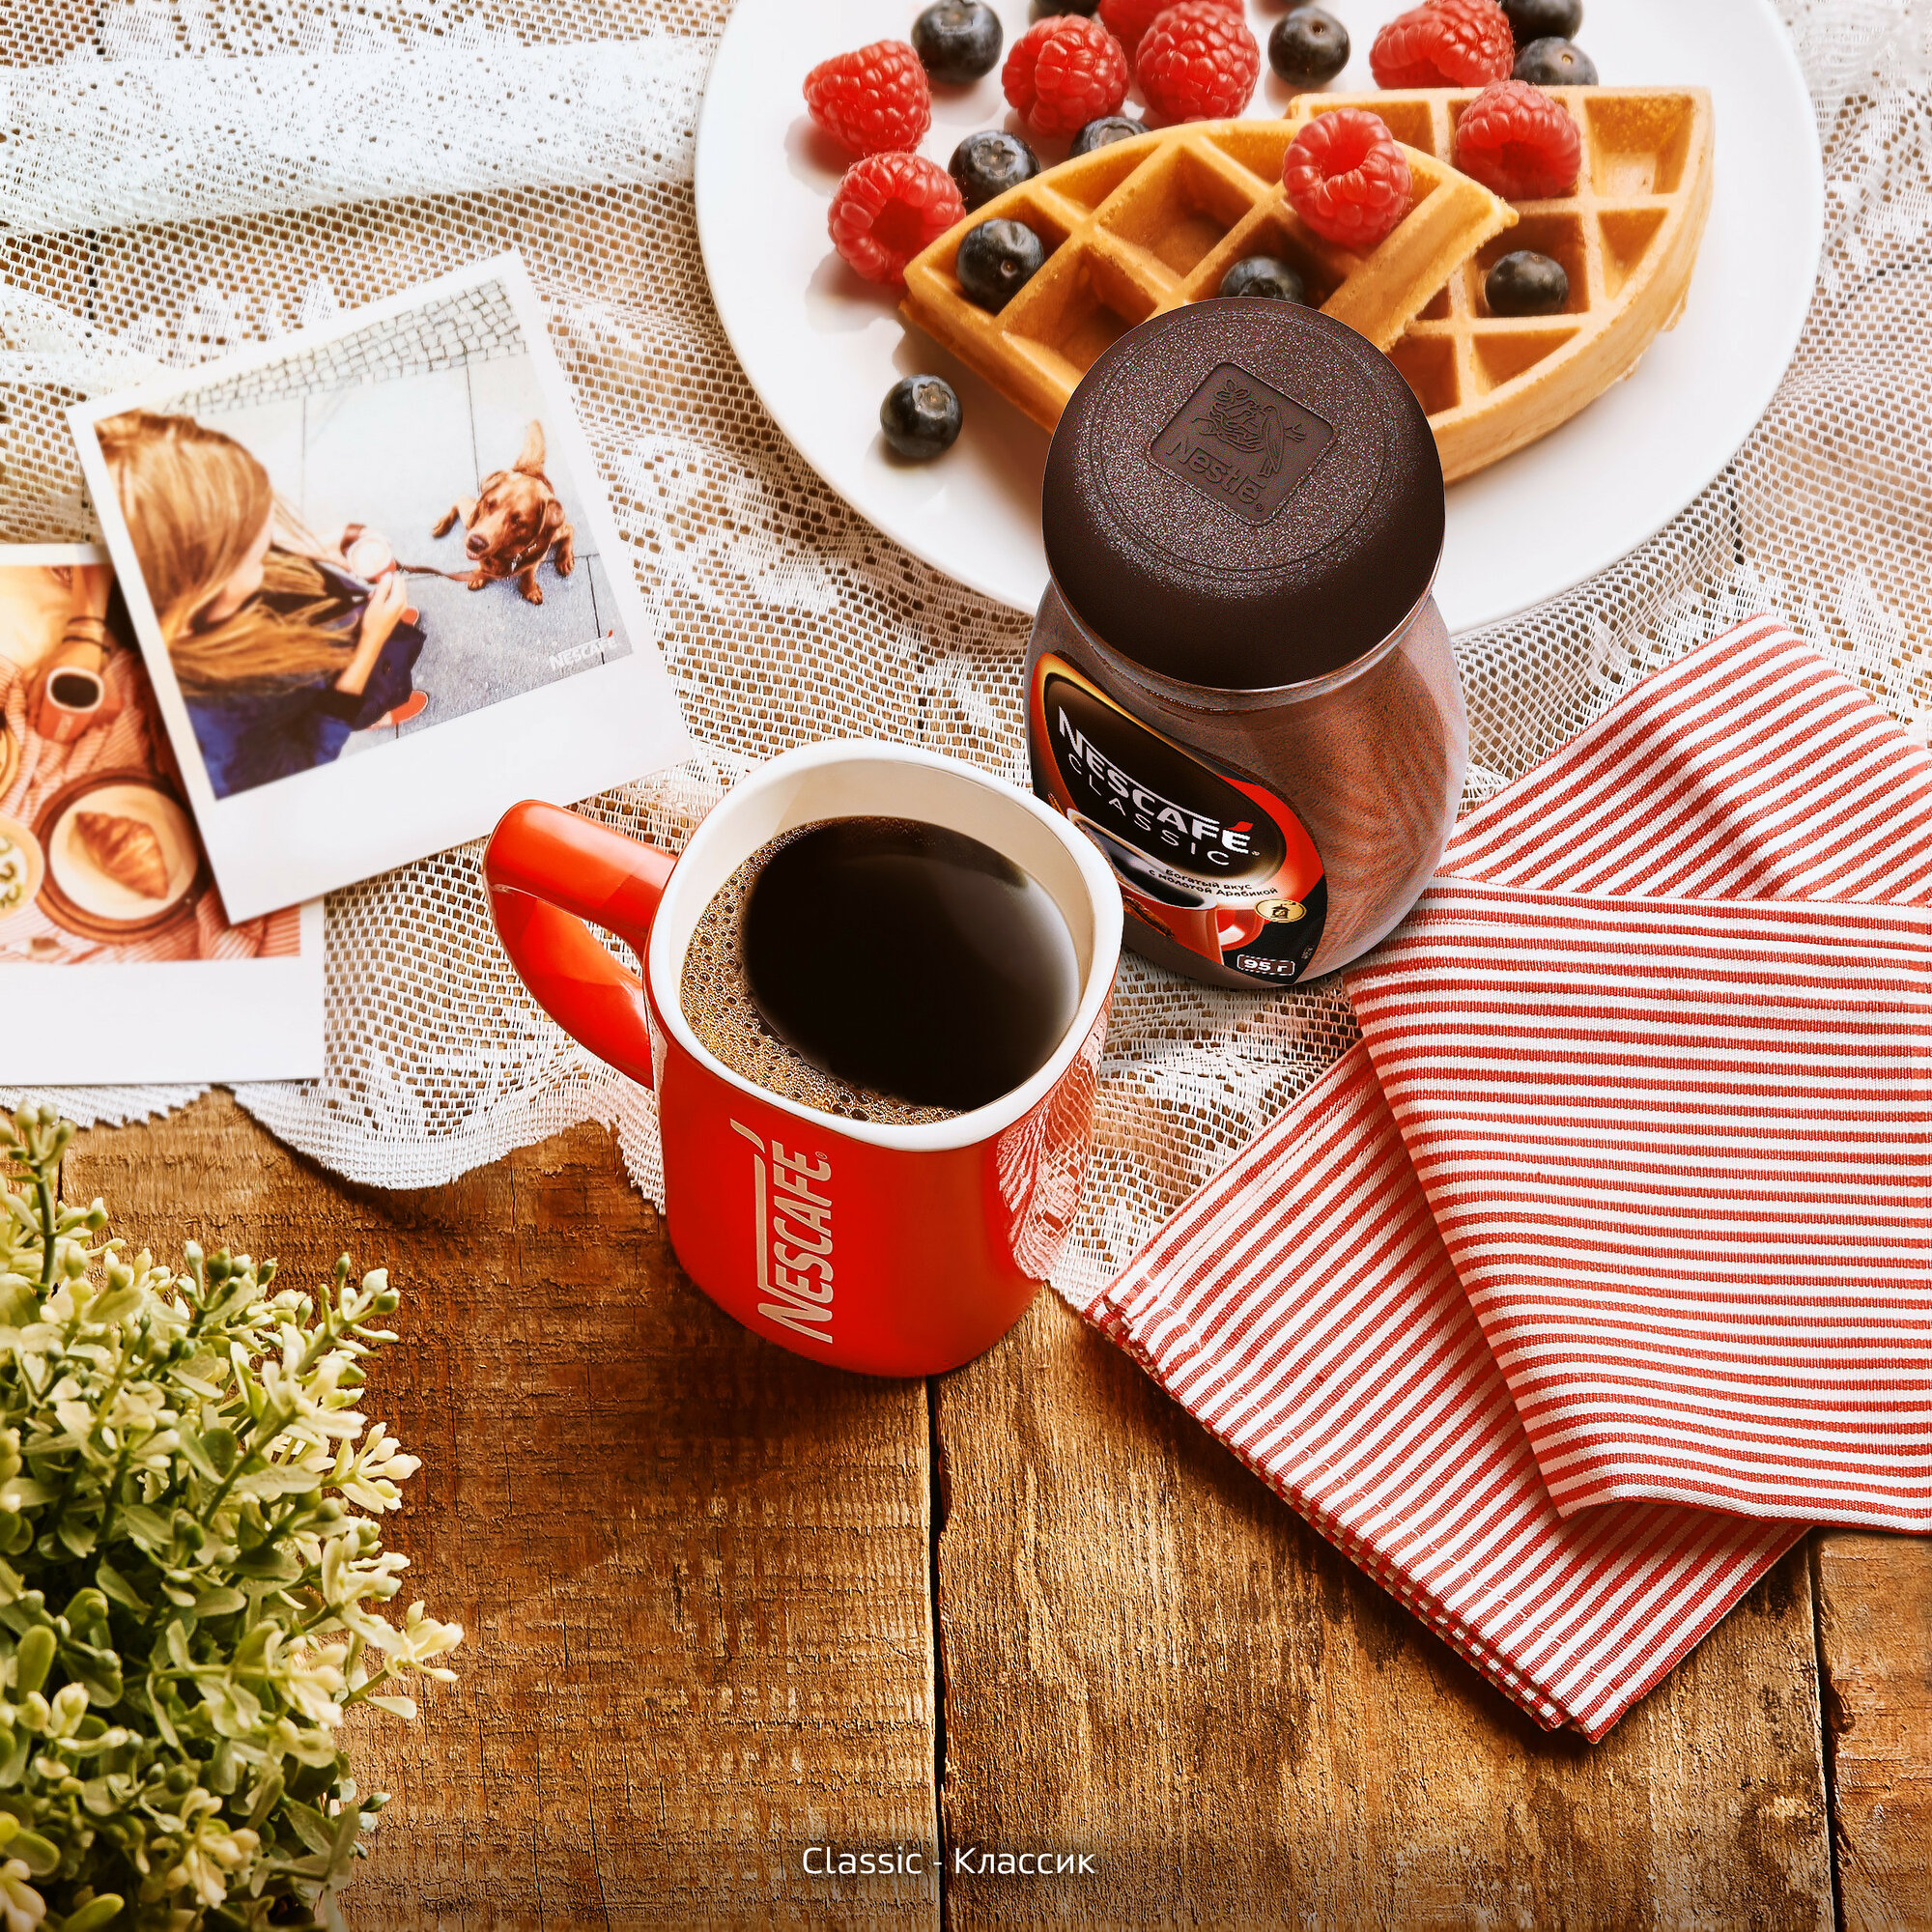 Кофе Nescafe Classic растворимый с добавлением молотой арабики, пакет, 2 уп. по 900 г - фотография № 17